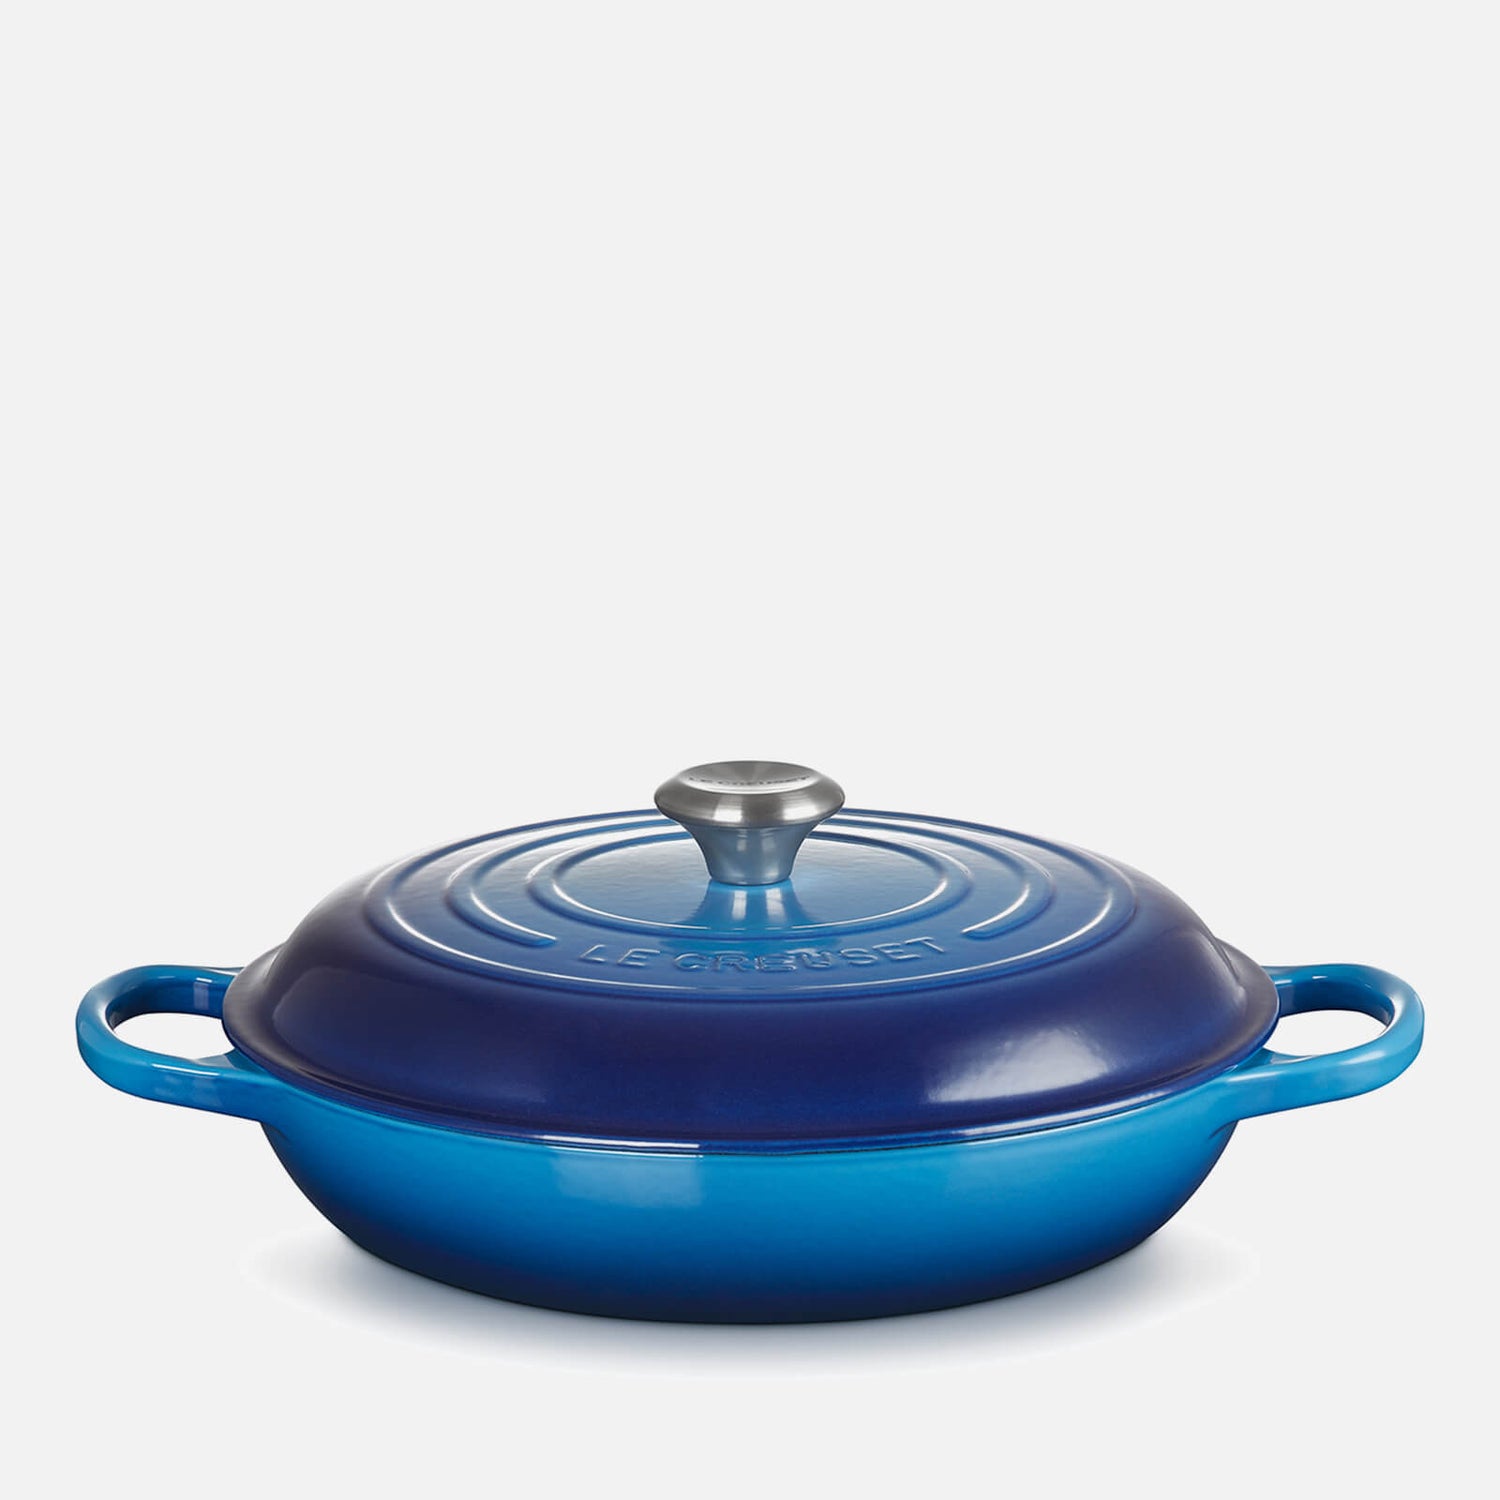 Le Creuset Signature Cast Iron Shallow Casserole Dish - 30cm - Azure Blue